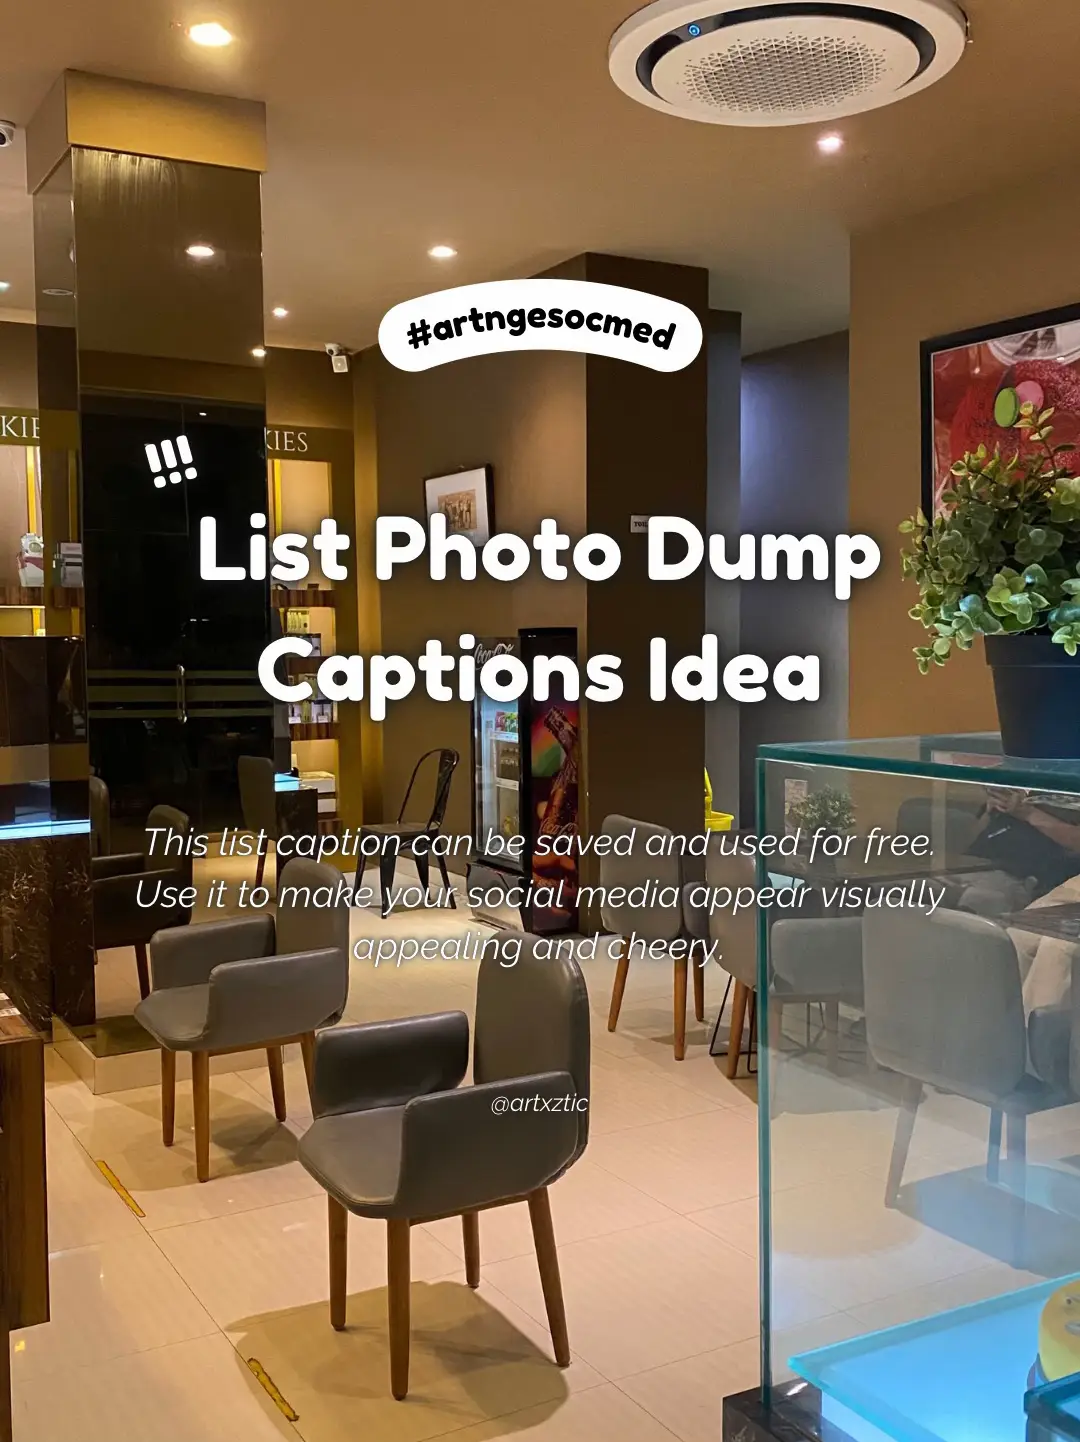 List Photo Dump Captions Idea's images